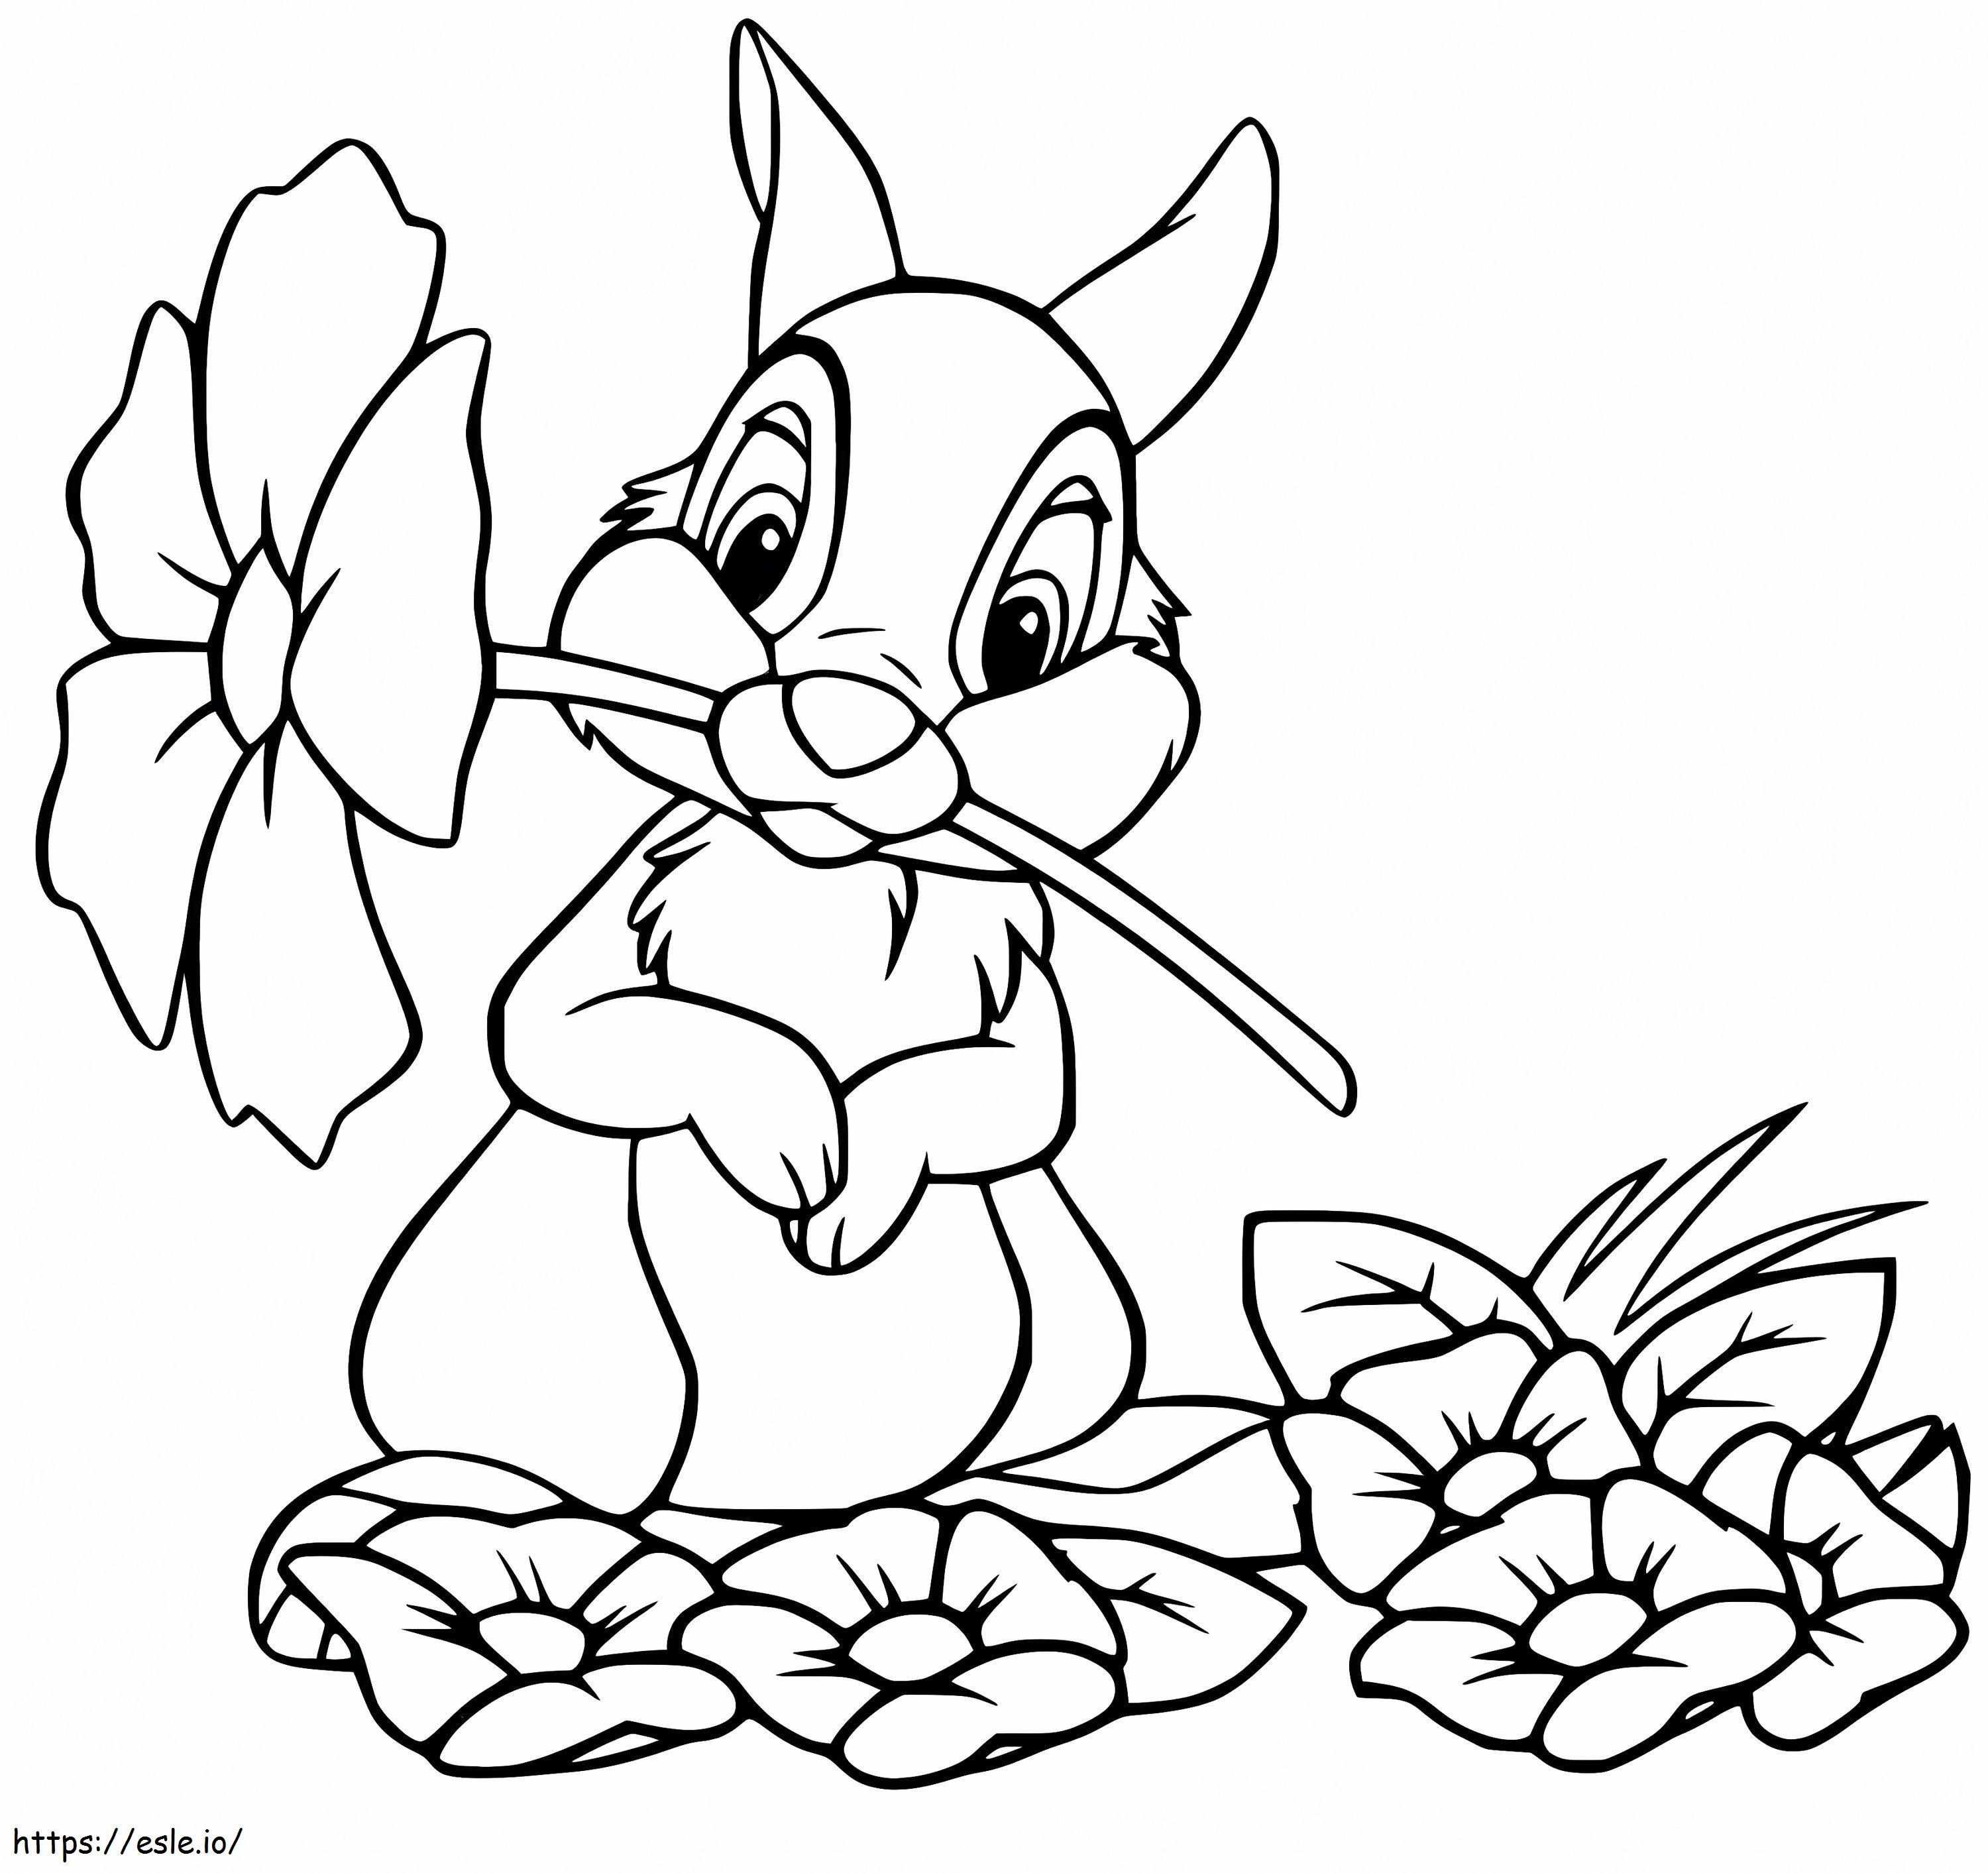 Thumper sosteniendo una flor para colorear